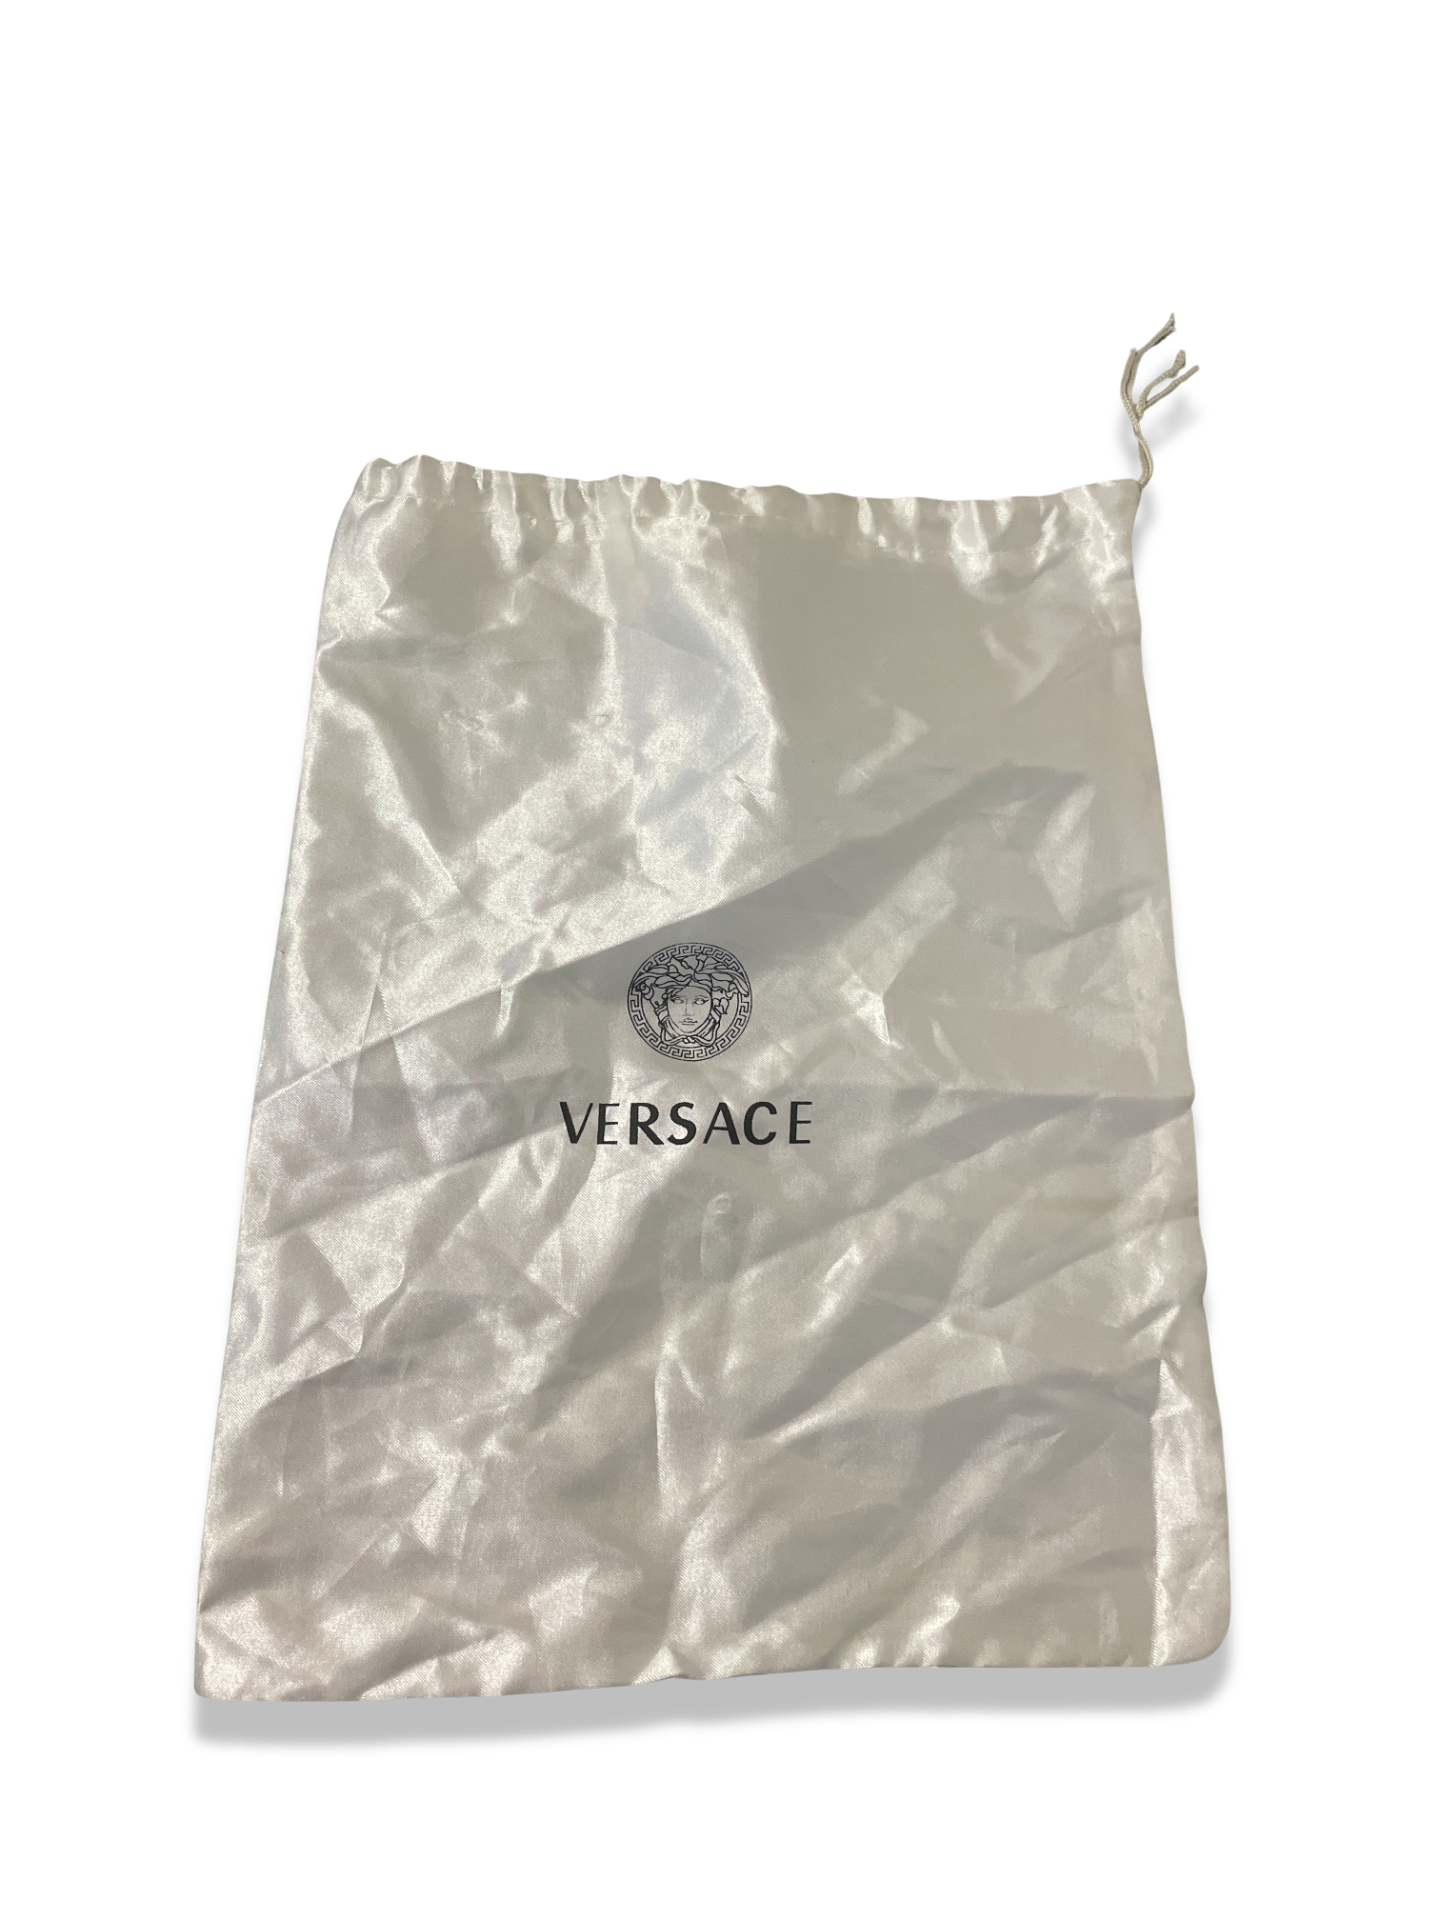 Rachels Closet Vintage y2k versace white dust bag